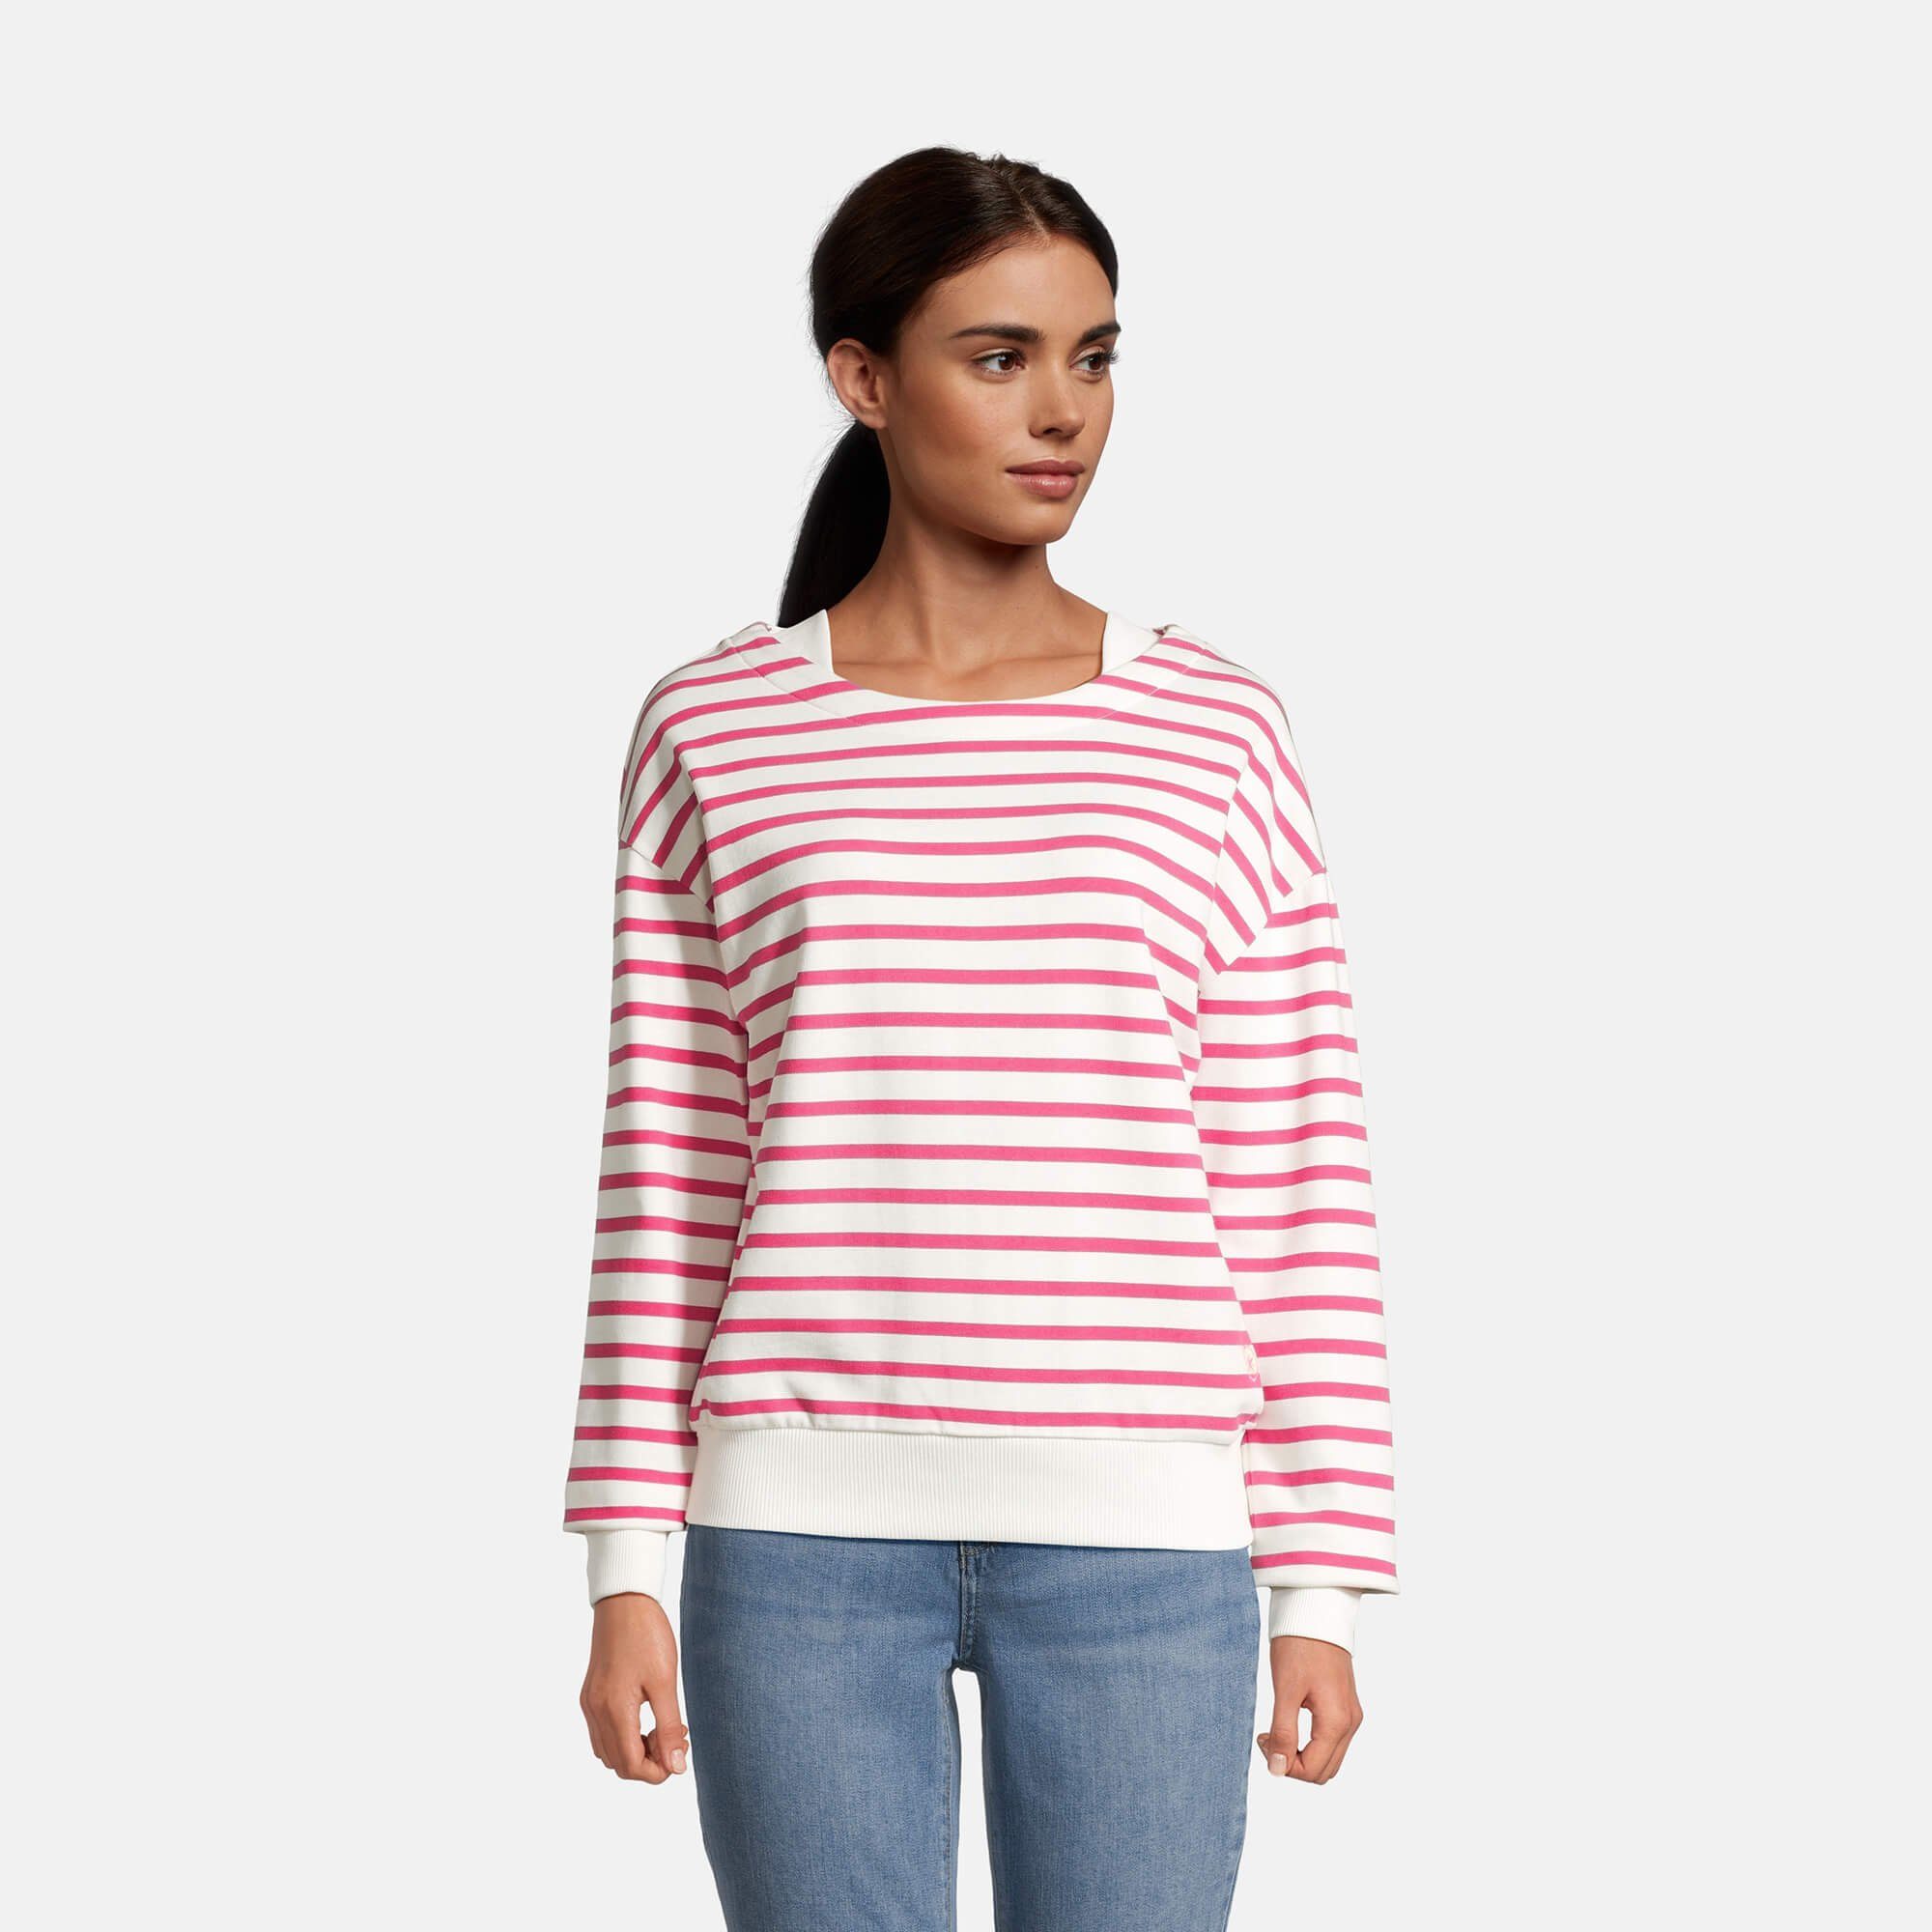 Streifenpullover offwhite Damen pink mit Sweater / Boatneck-Ausschnitt Laff und Pullover Streifen salzhaut